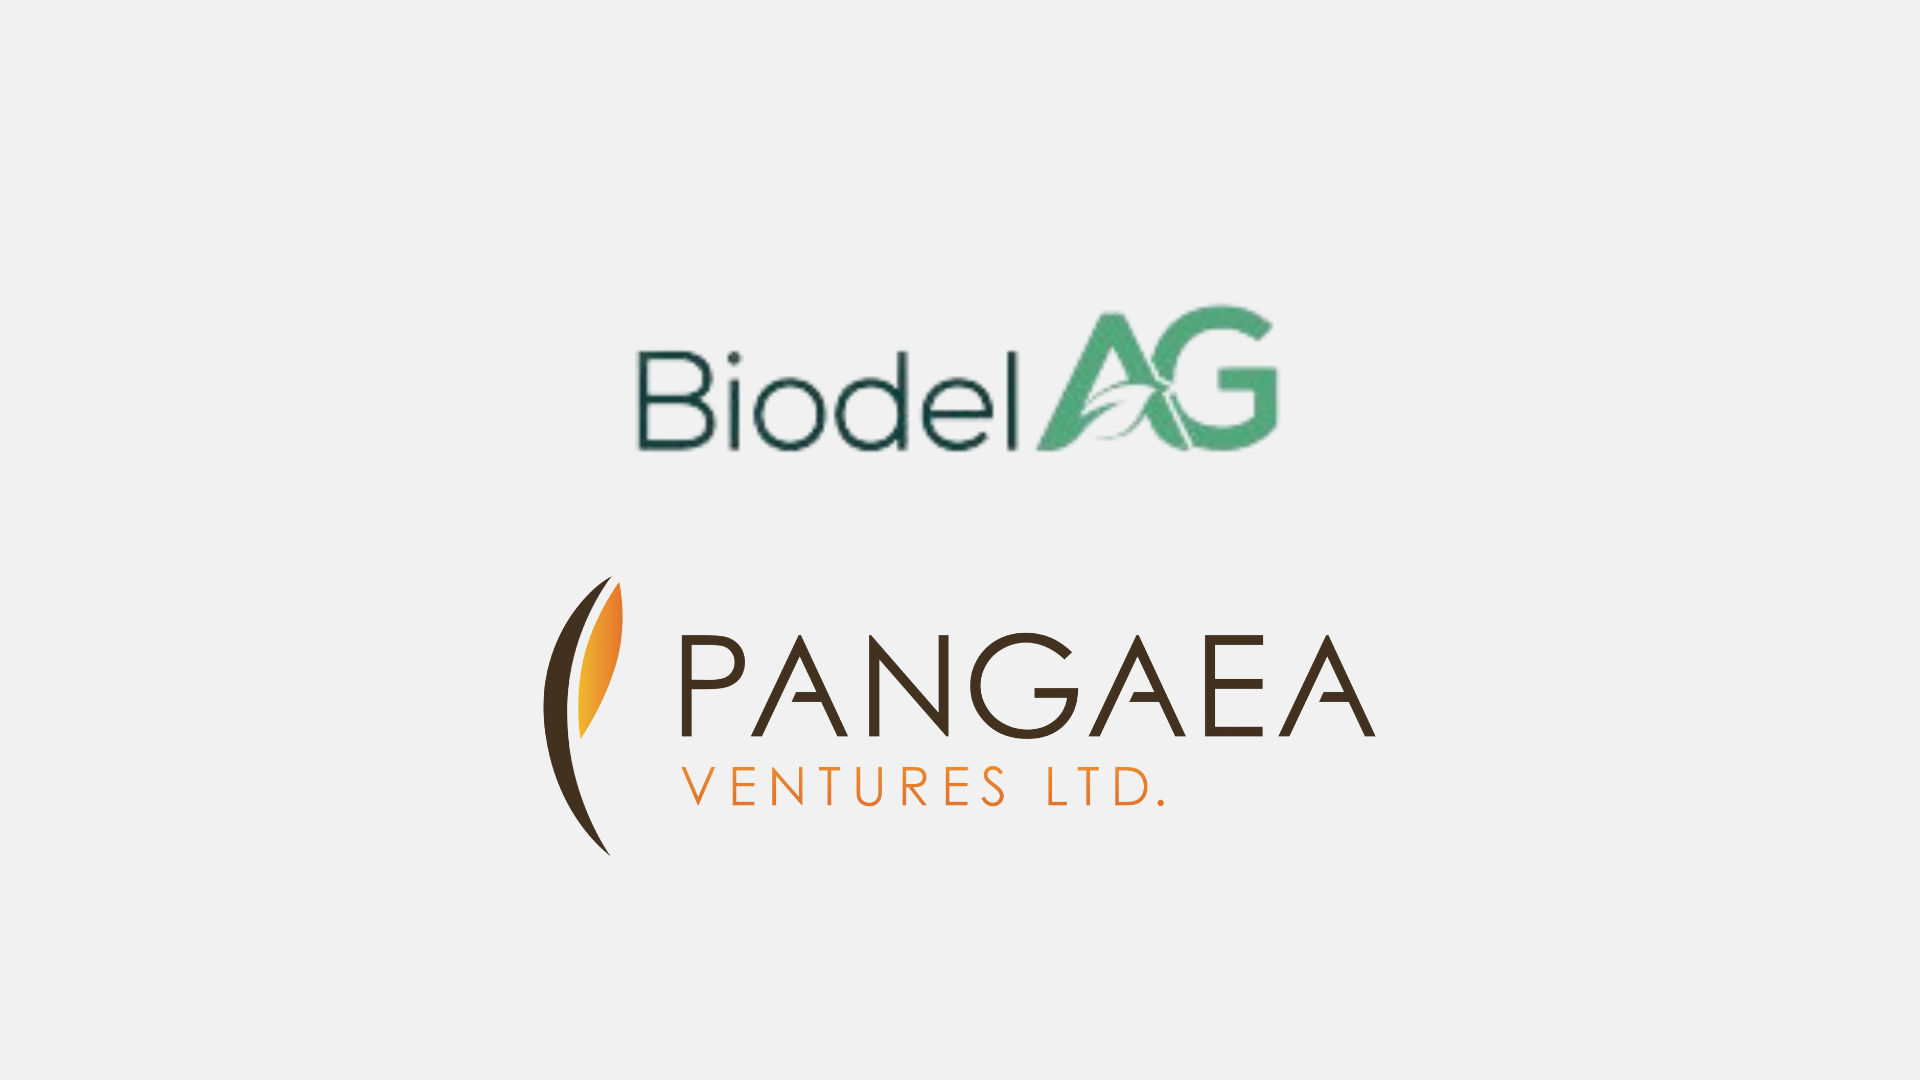 Biodel AG garante investimento série A da Pangaea Ventures para promover novas tecnologias de agricultura regenerativa